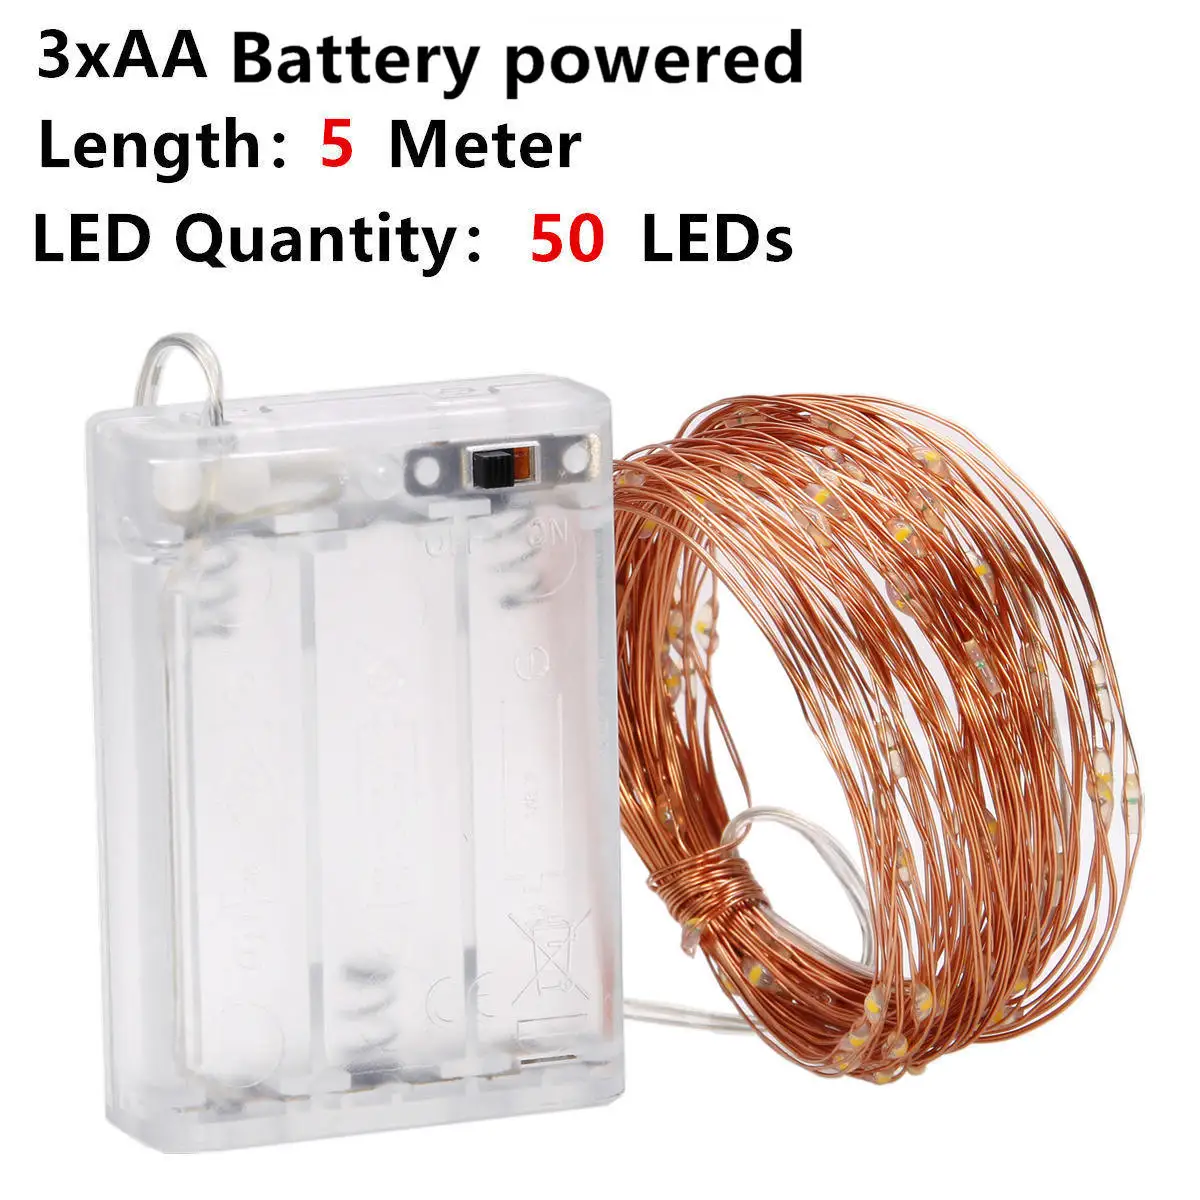 Сказочный светодиодный светильник s 10 светодиодный/M 10M 5M 2M 3XAA на батарейках светодиодный светильник для праздничной гирлянды вечерние, свадебные, рождественские украшения - Испускаемый цвет: 5M AA No Battery